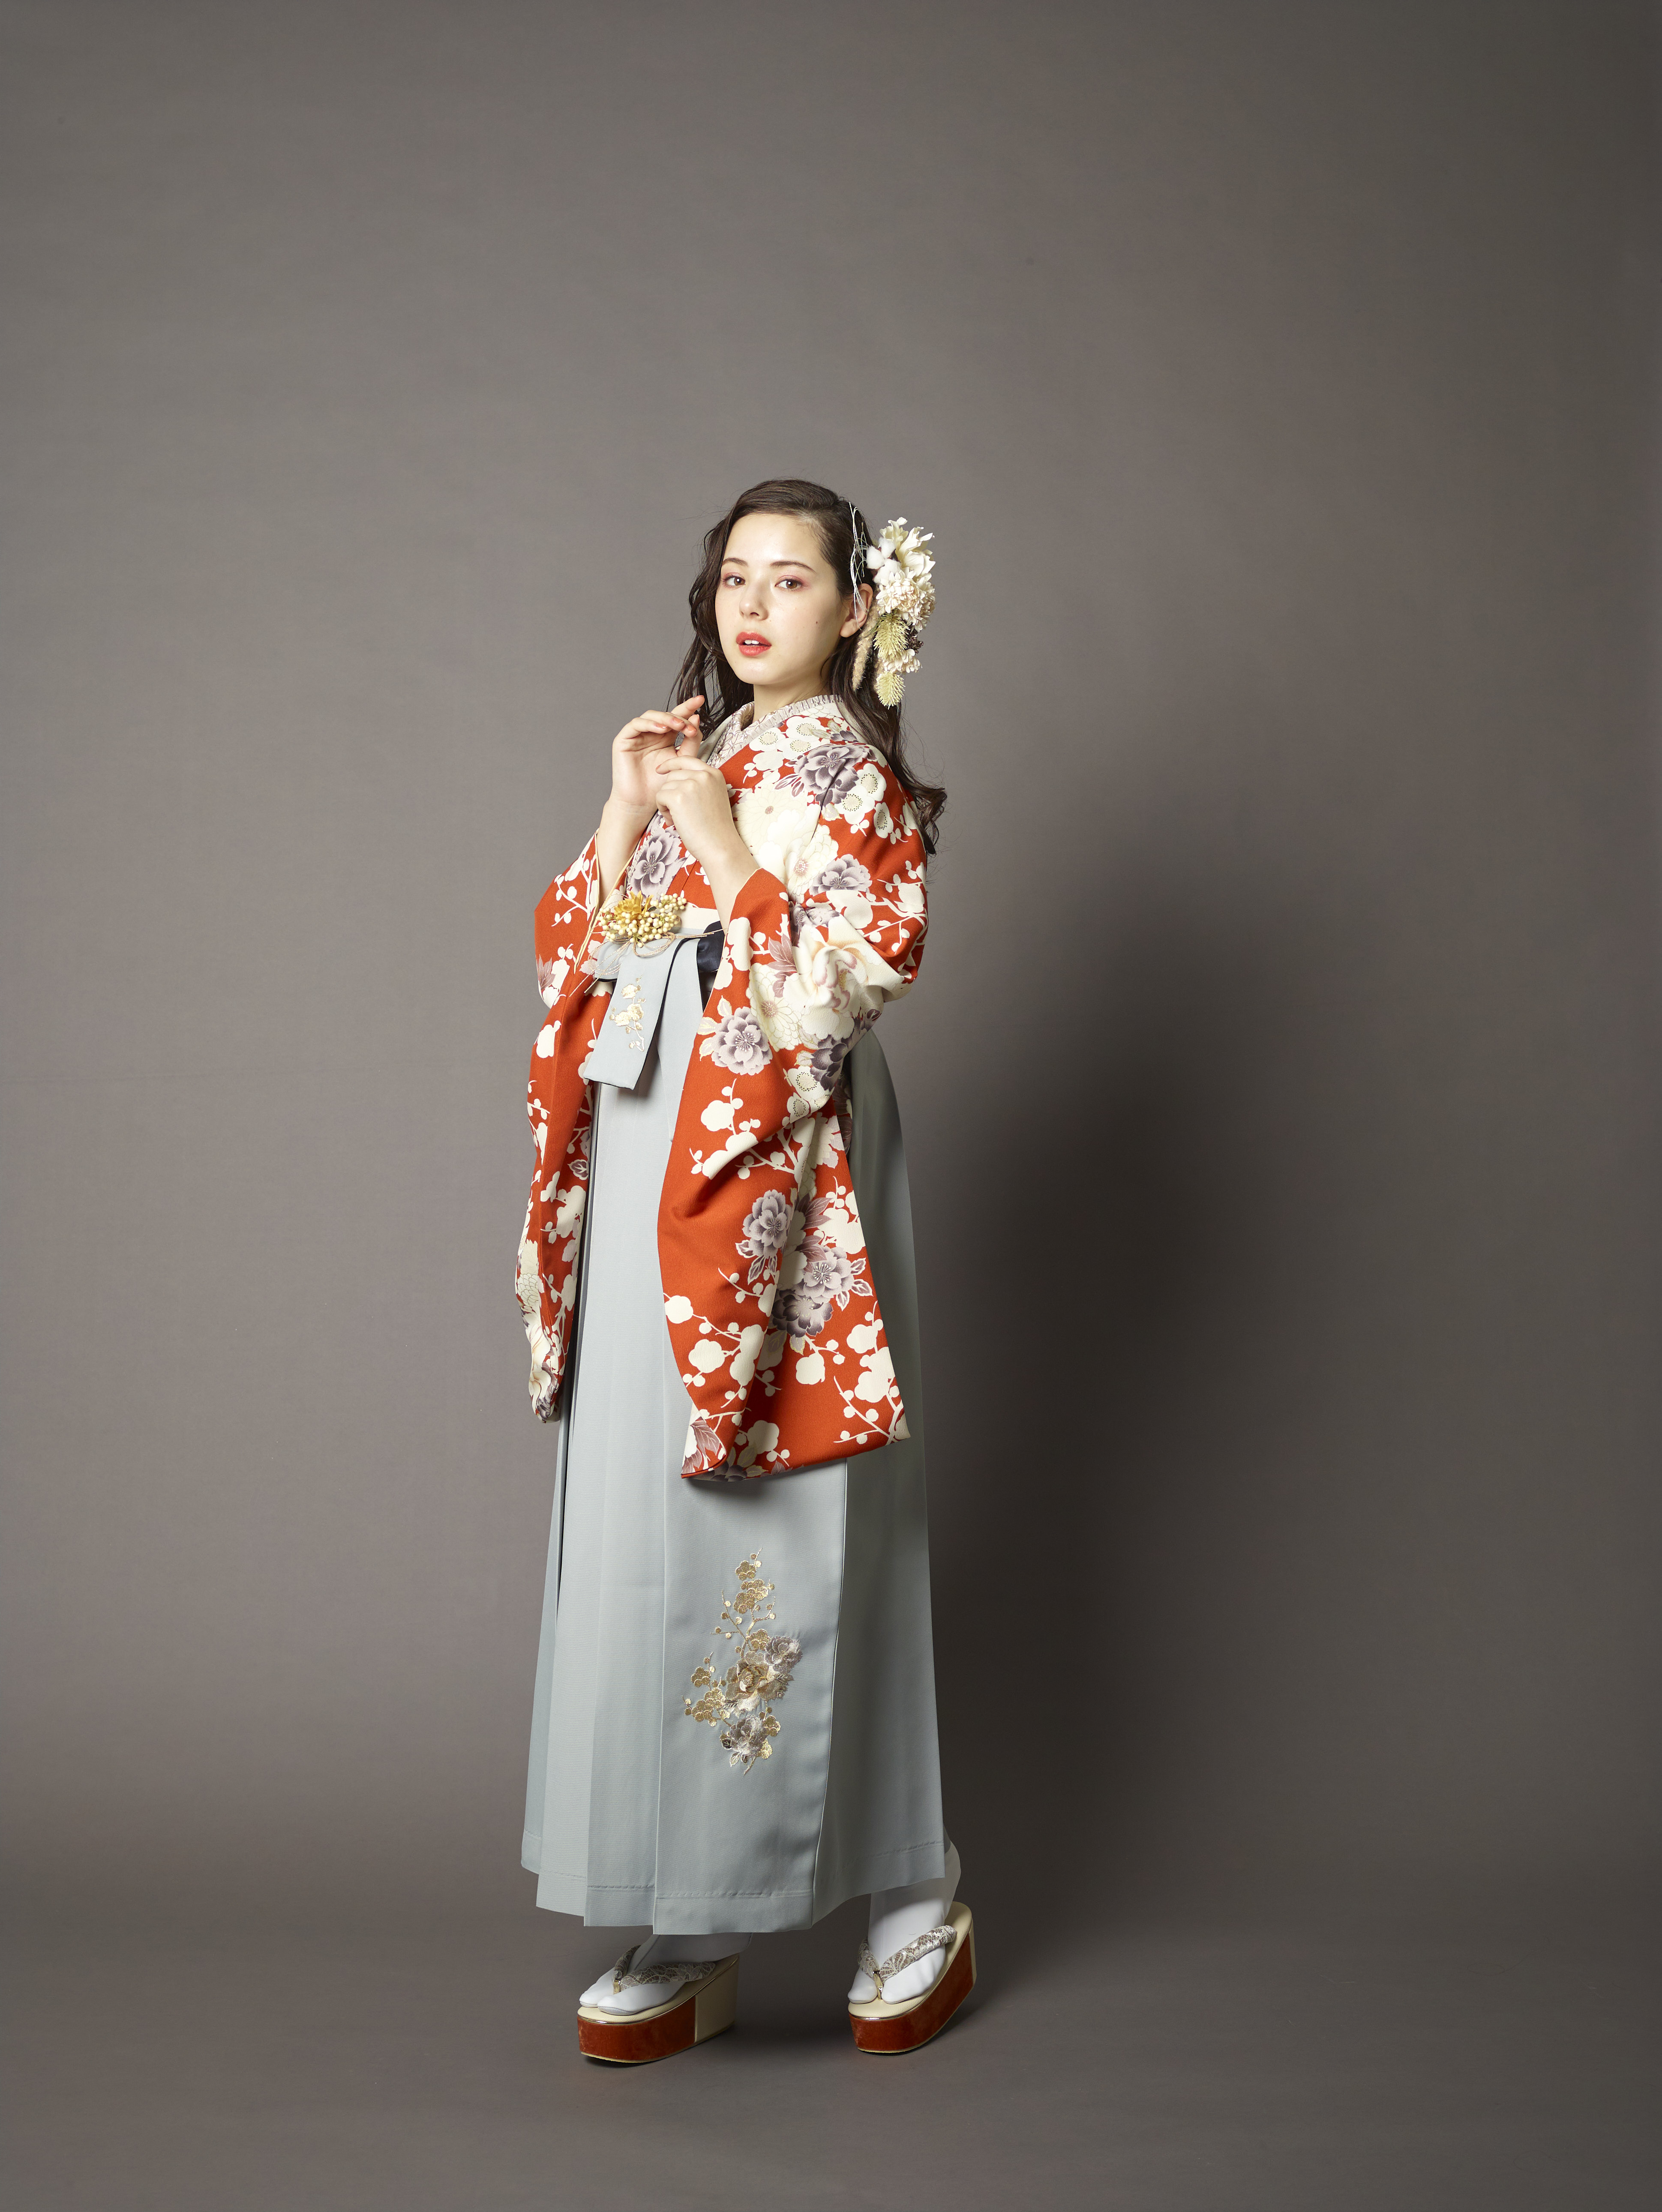 山本寛斎（ヤマモトカンサイ）ブランドの、テラコッタ地に白の花柄の二尺袖と、グレーの袴の女性用卒業式袴を着用した全身写真